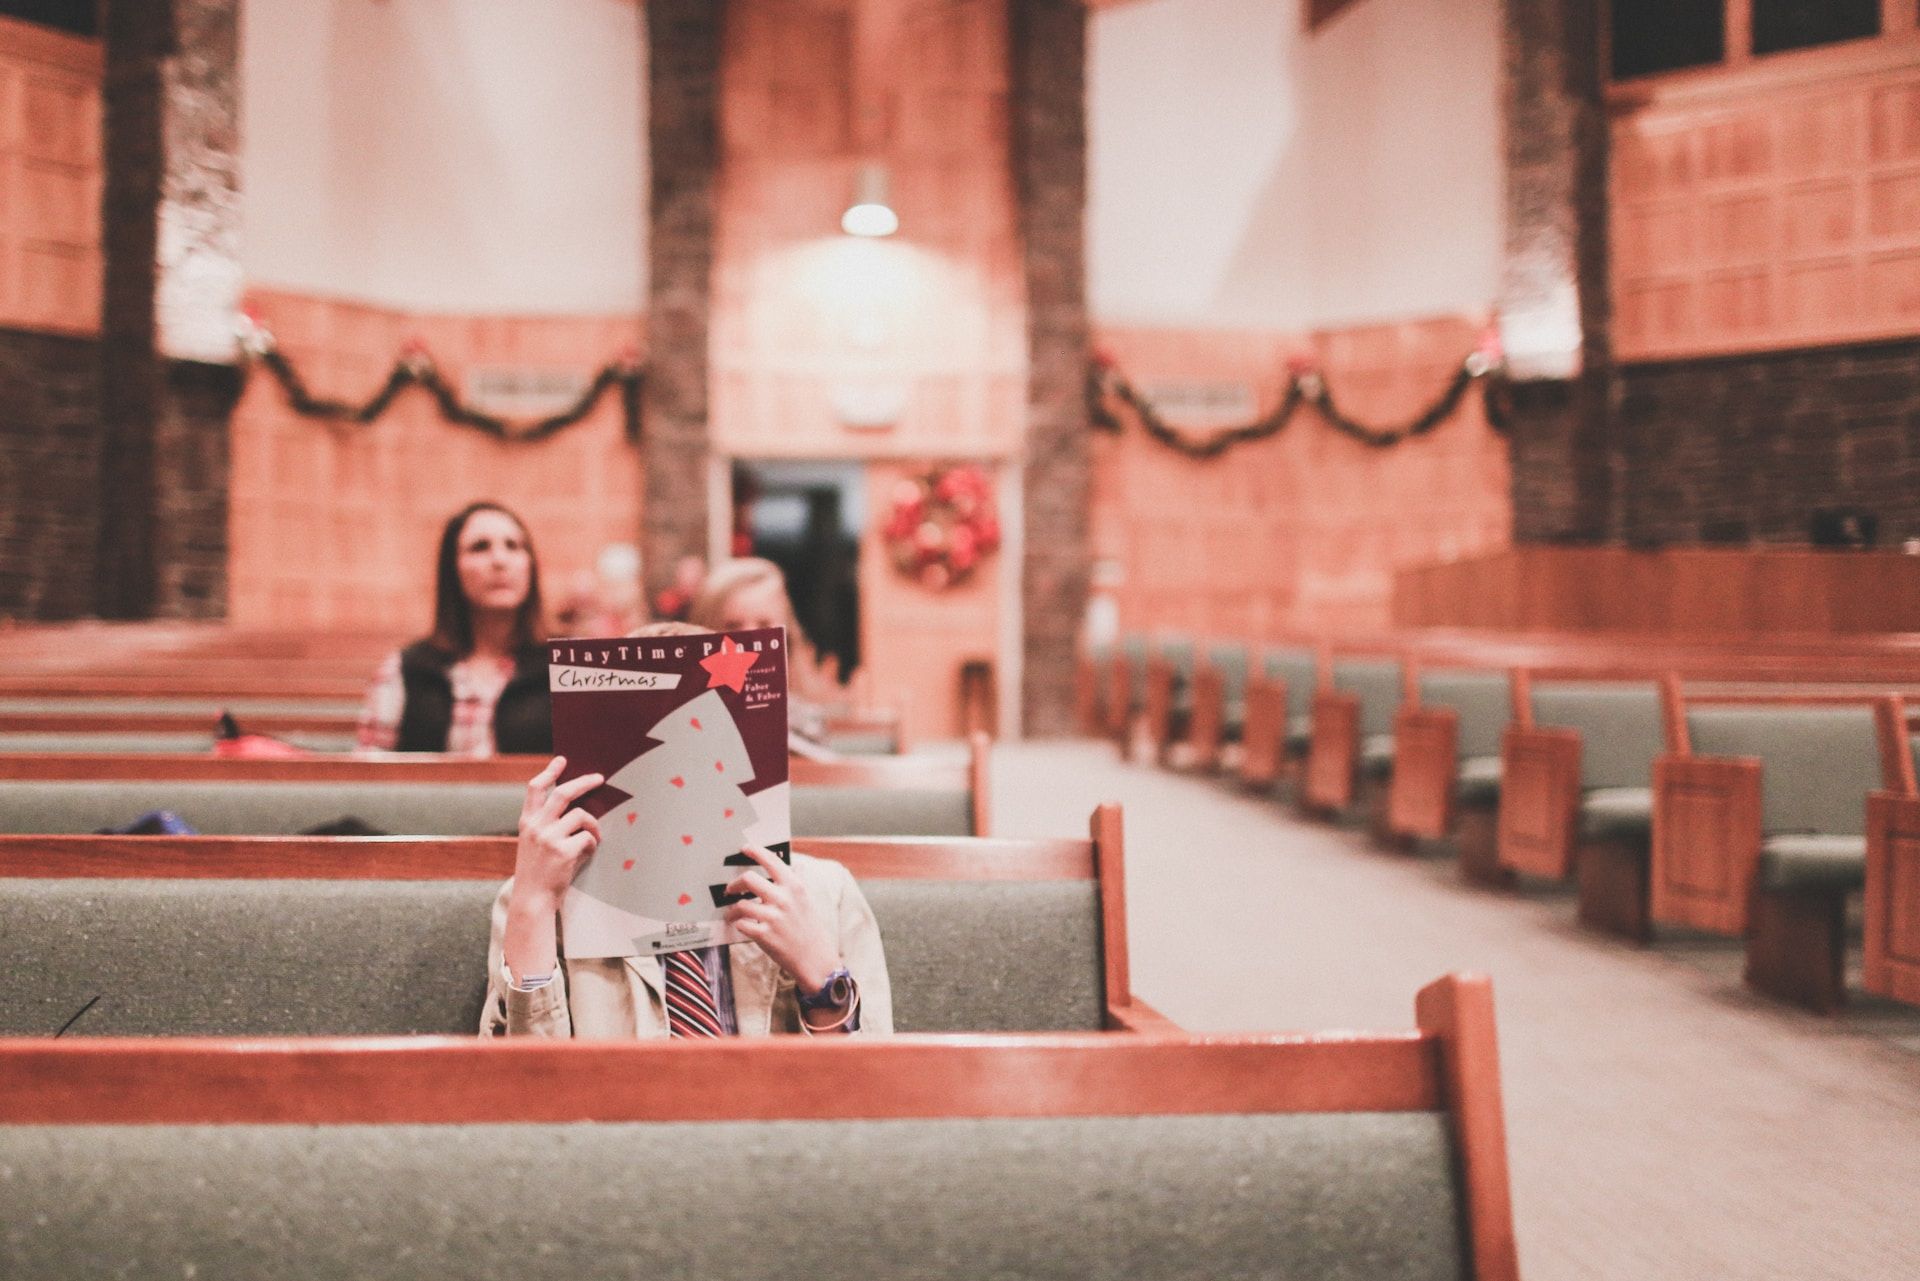 une ou deux personnes en train de lire un programme dans une église vide - Photo de Katie Treadway sur https://unsplash.com/fr/photos/mUsvve8GbHo